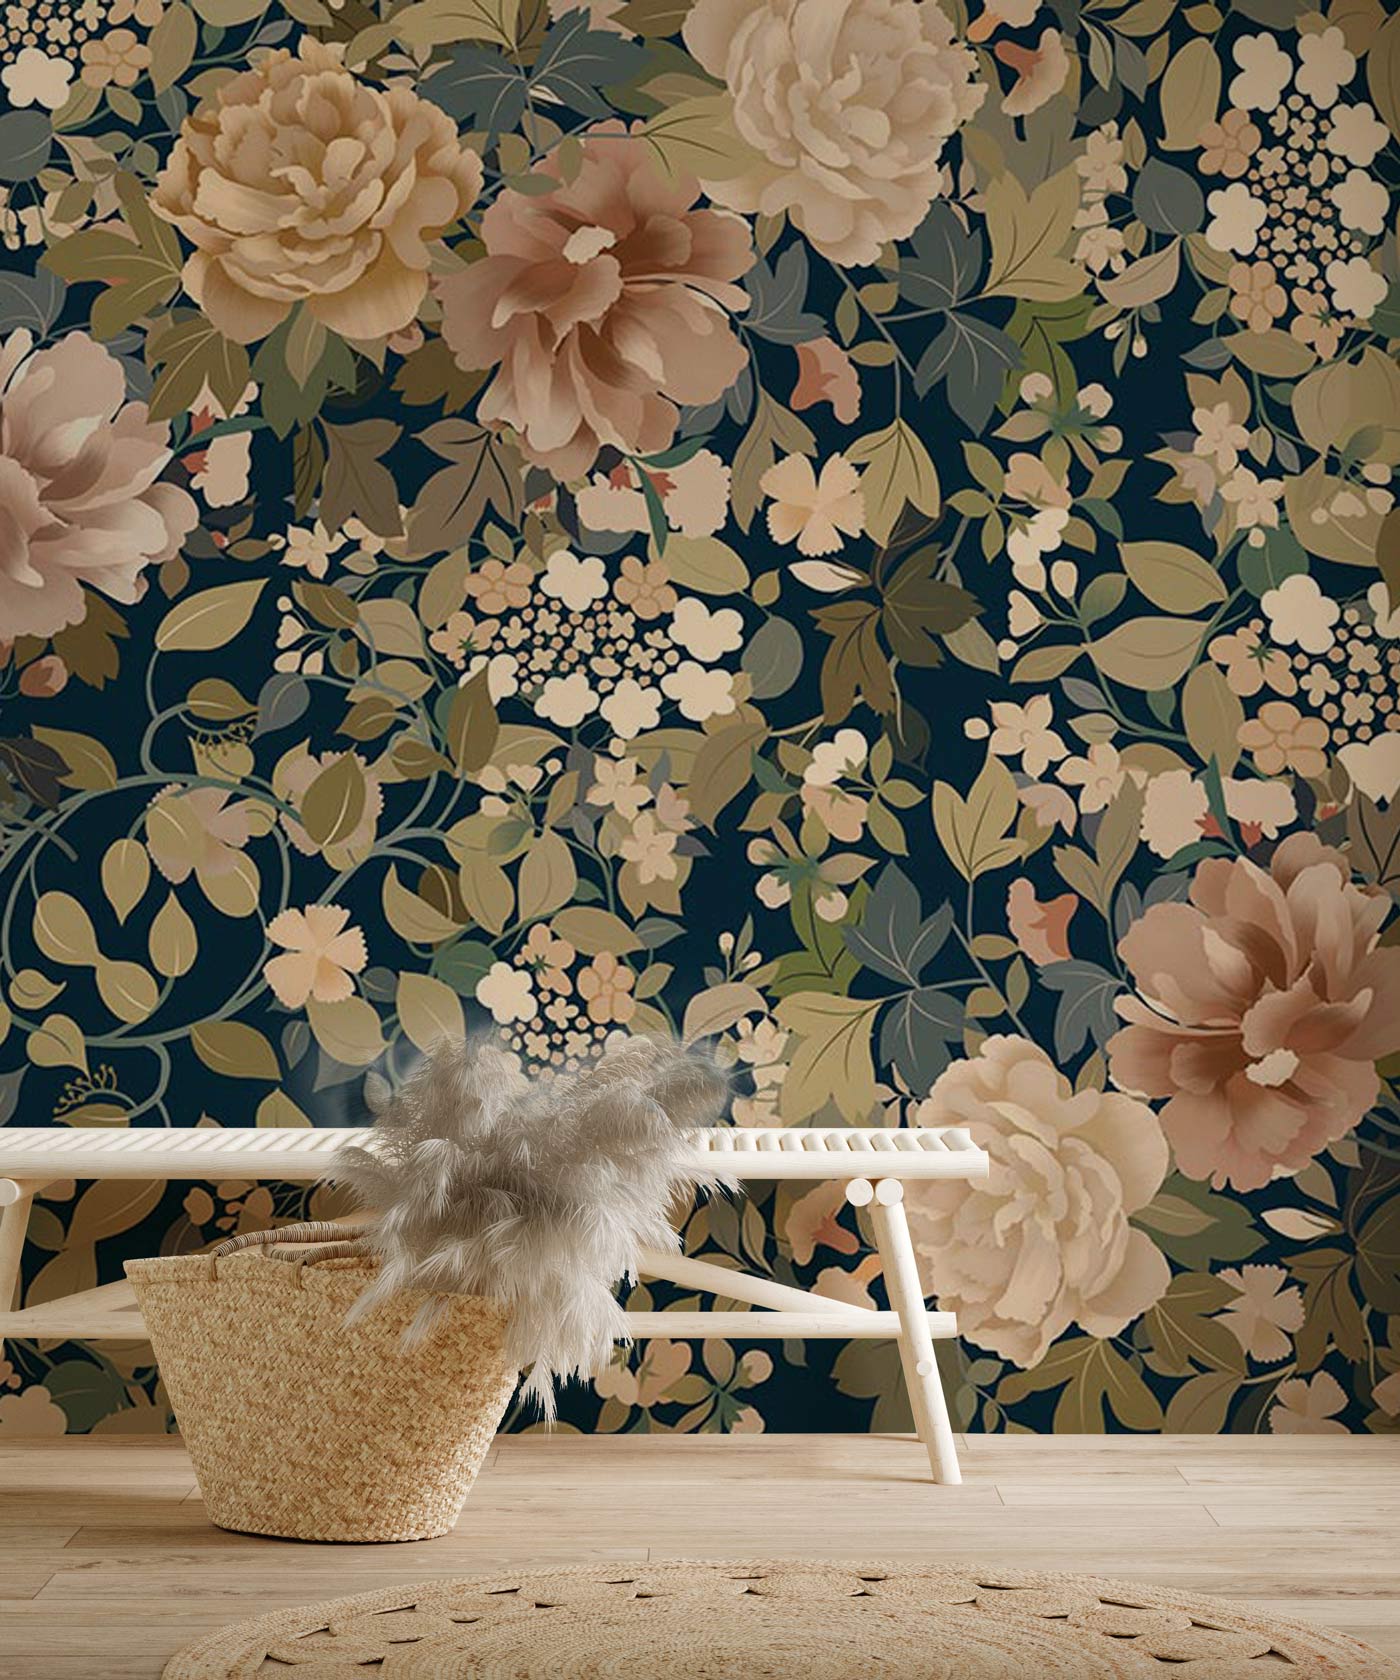 stylish Flowers & leaves Wallpaper Mural for living Room decor